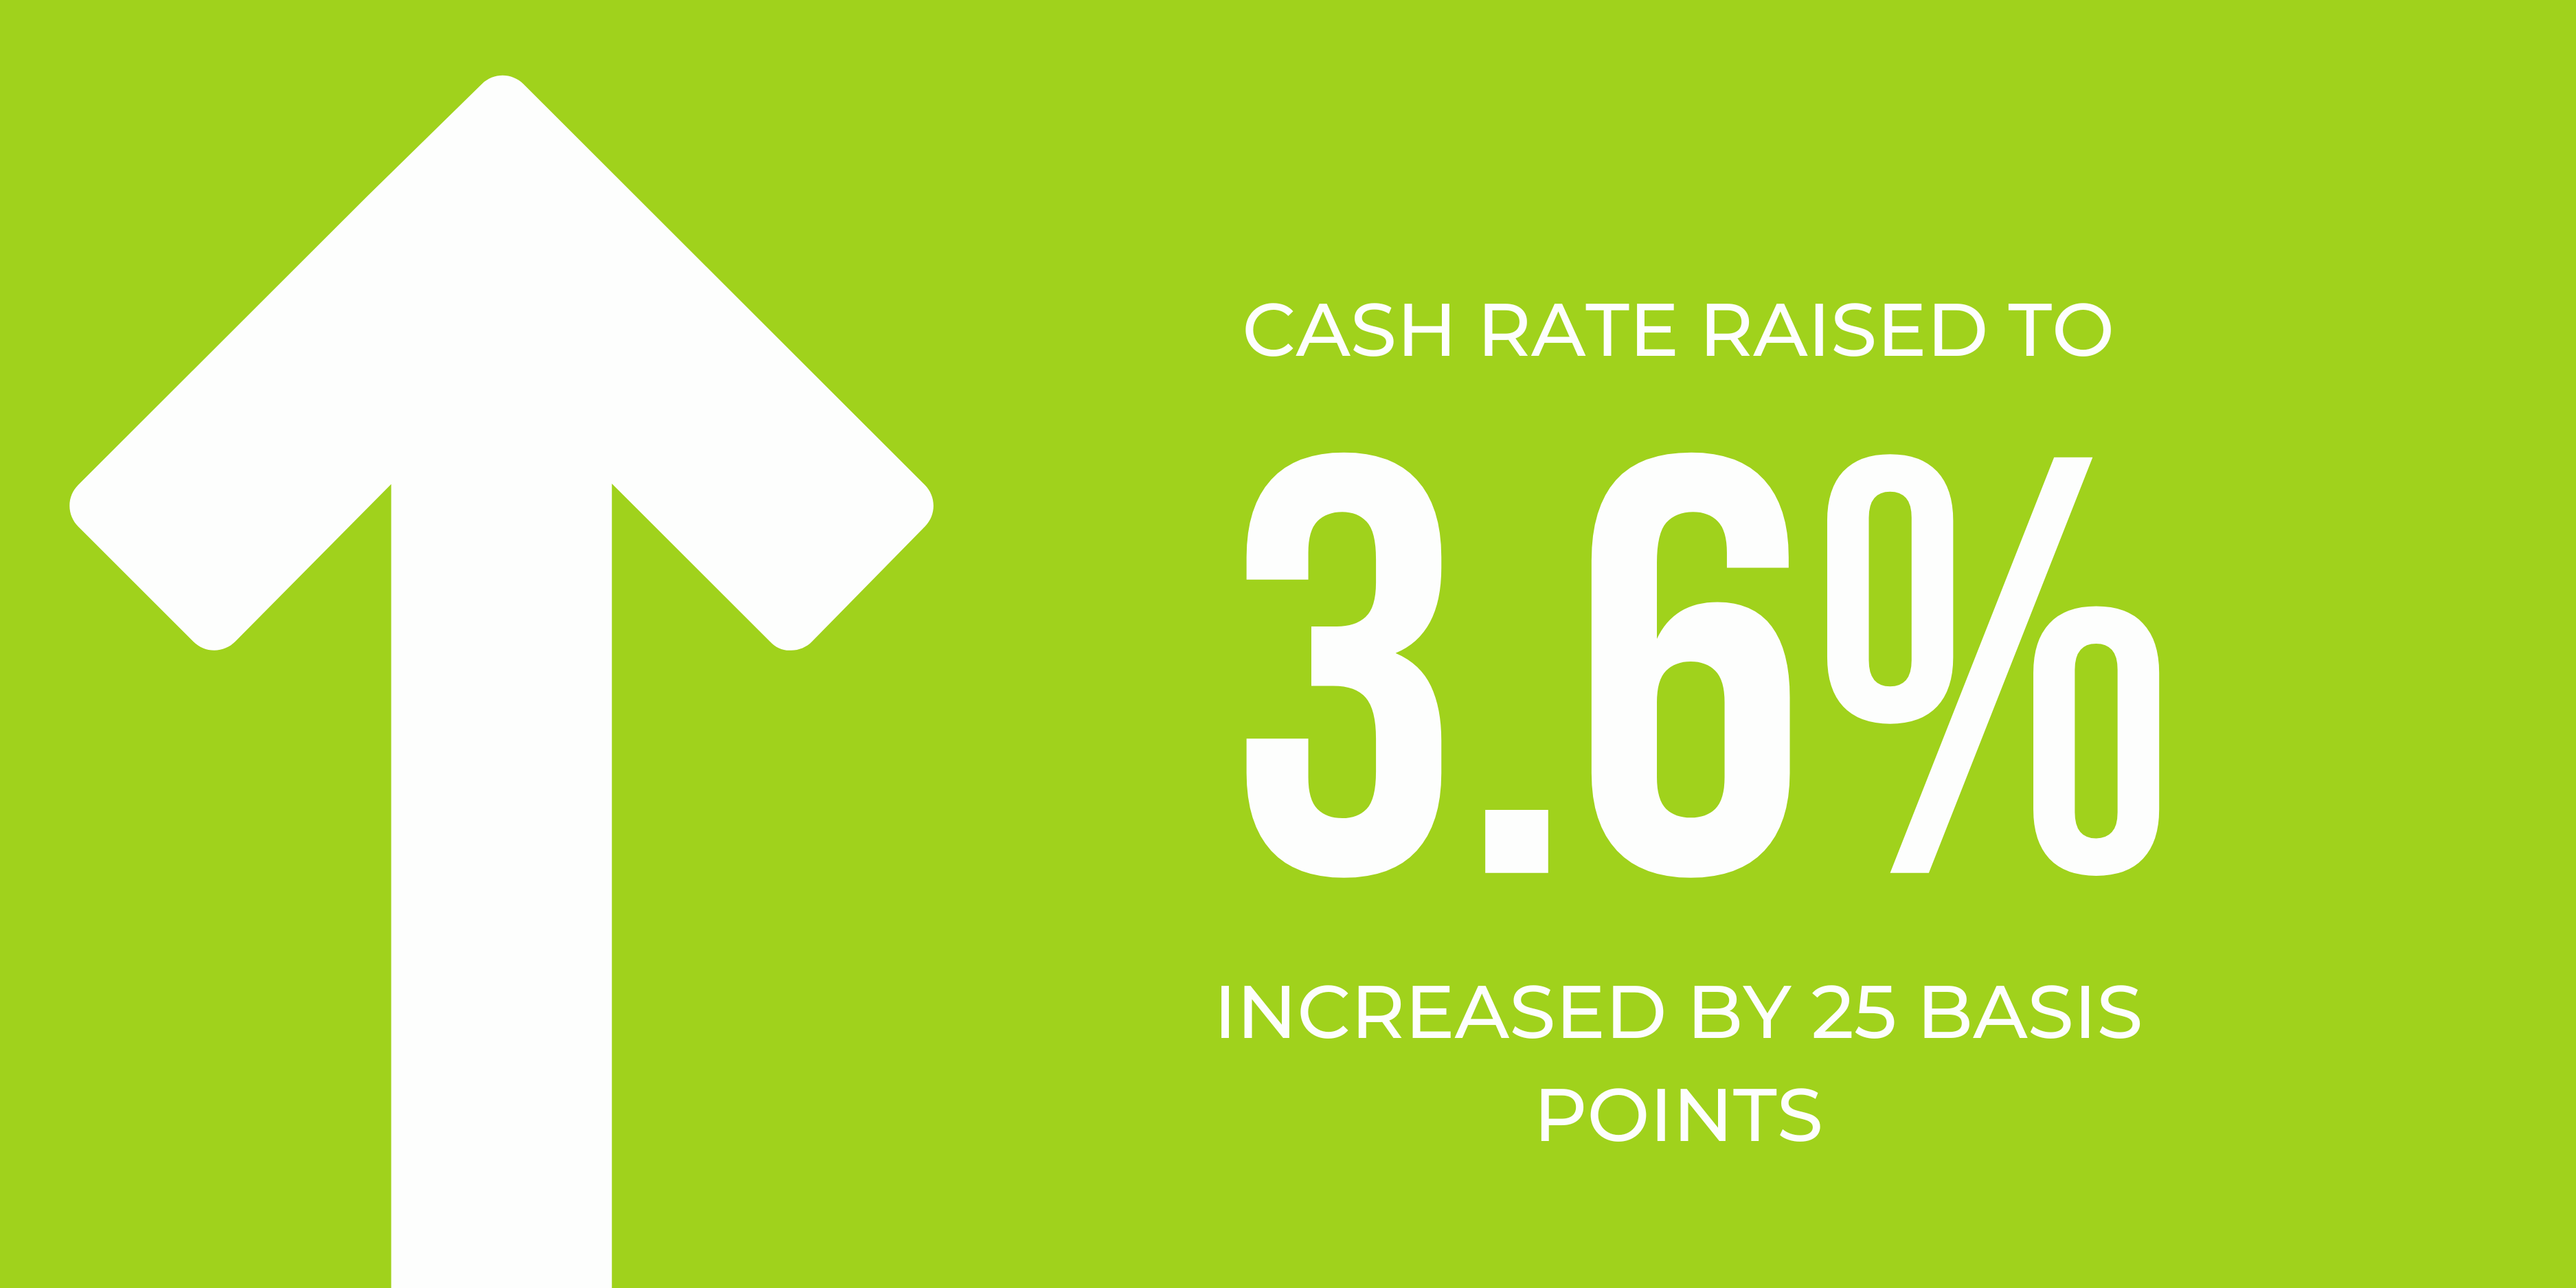 RBA increases cash rate again